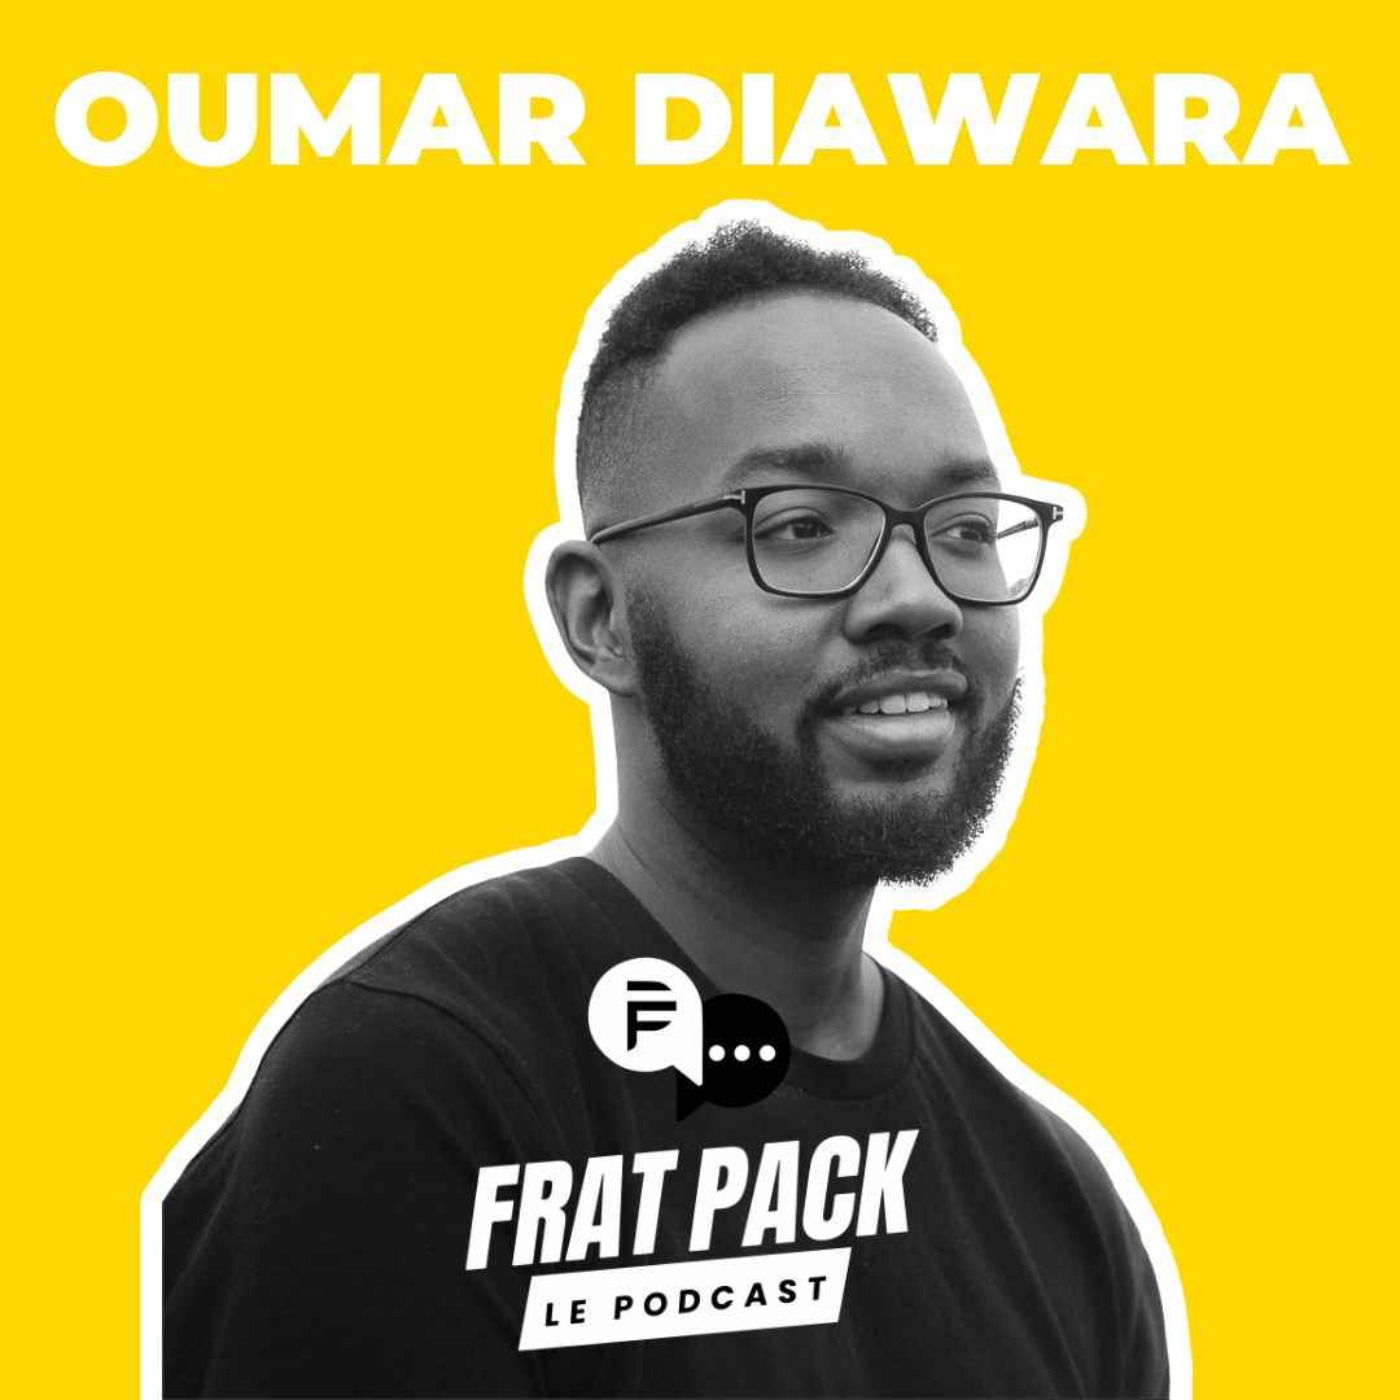 S02E011 Frat Pack avec Oumar Diawara